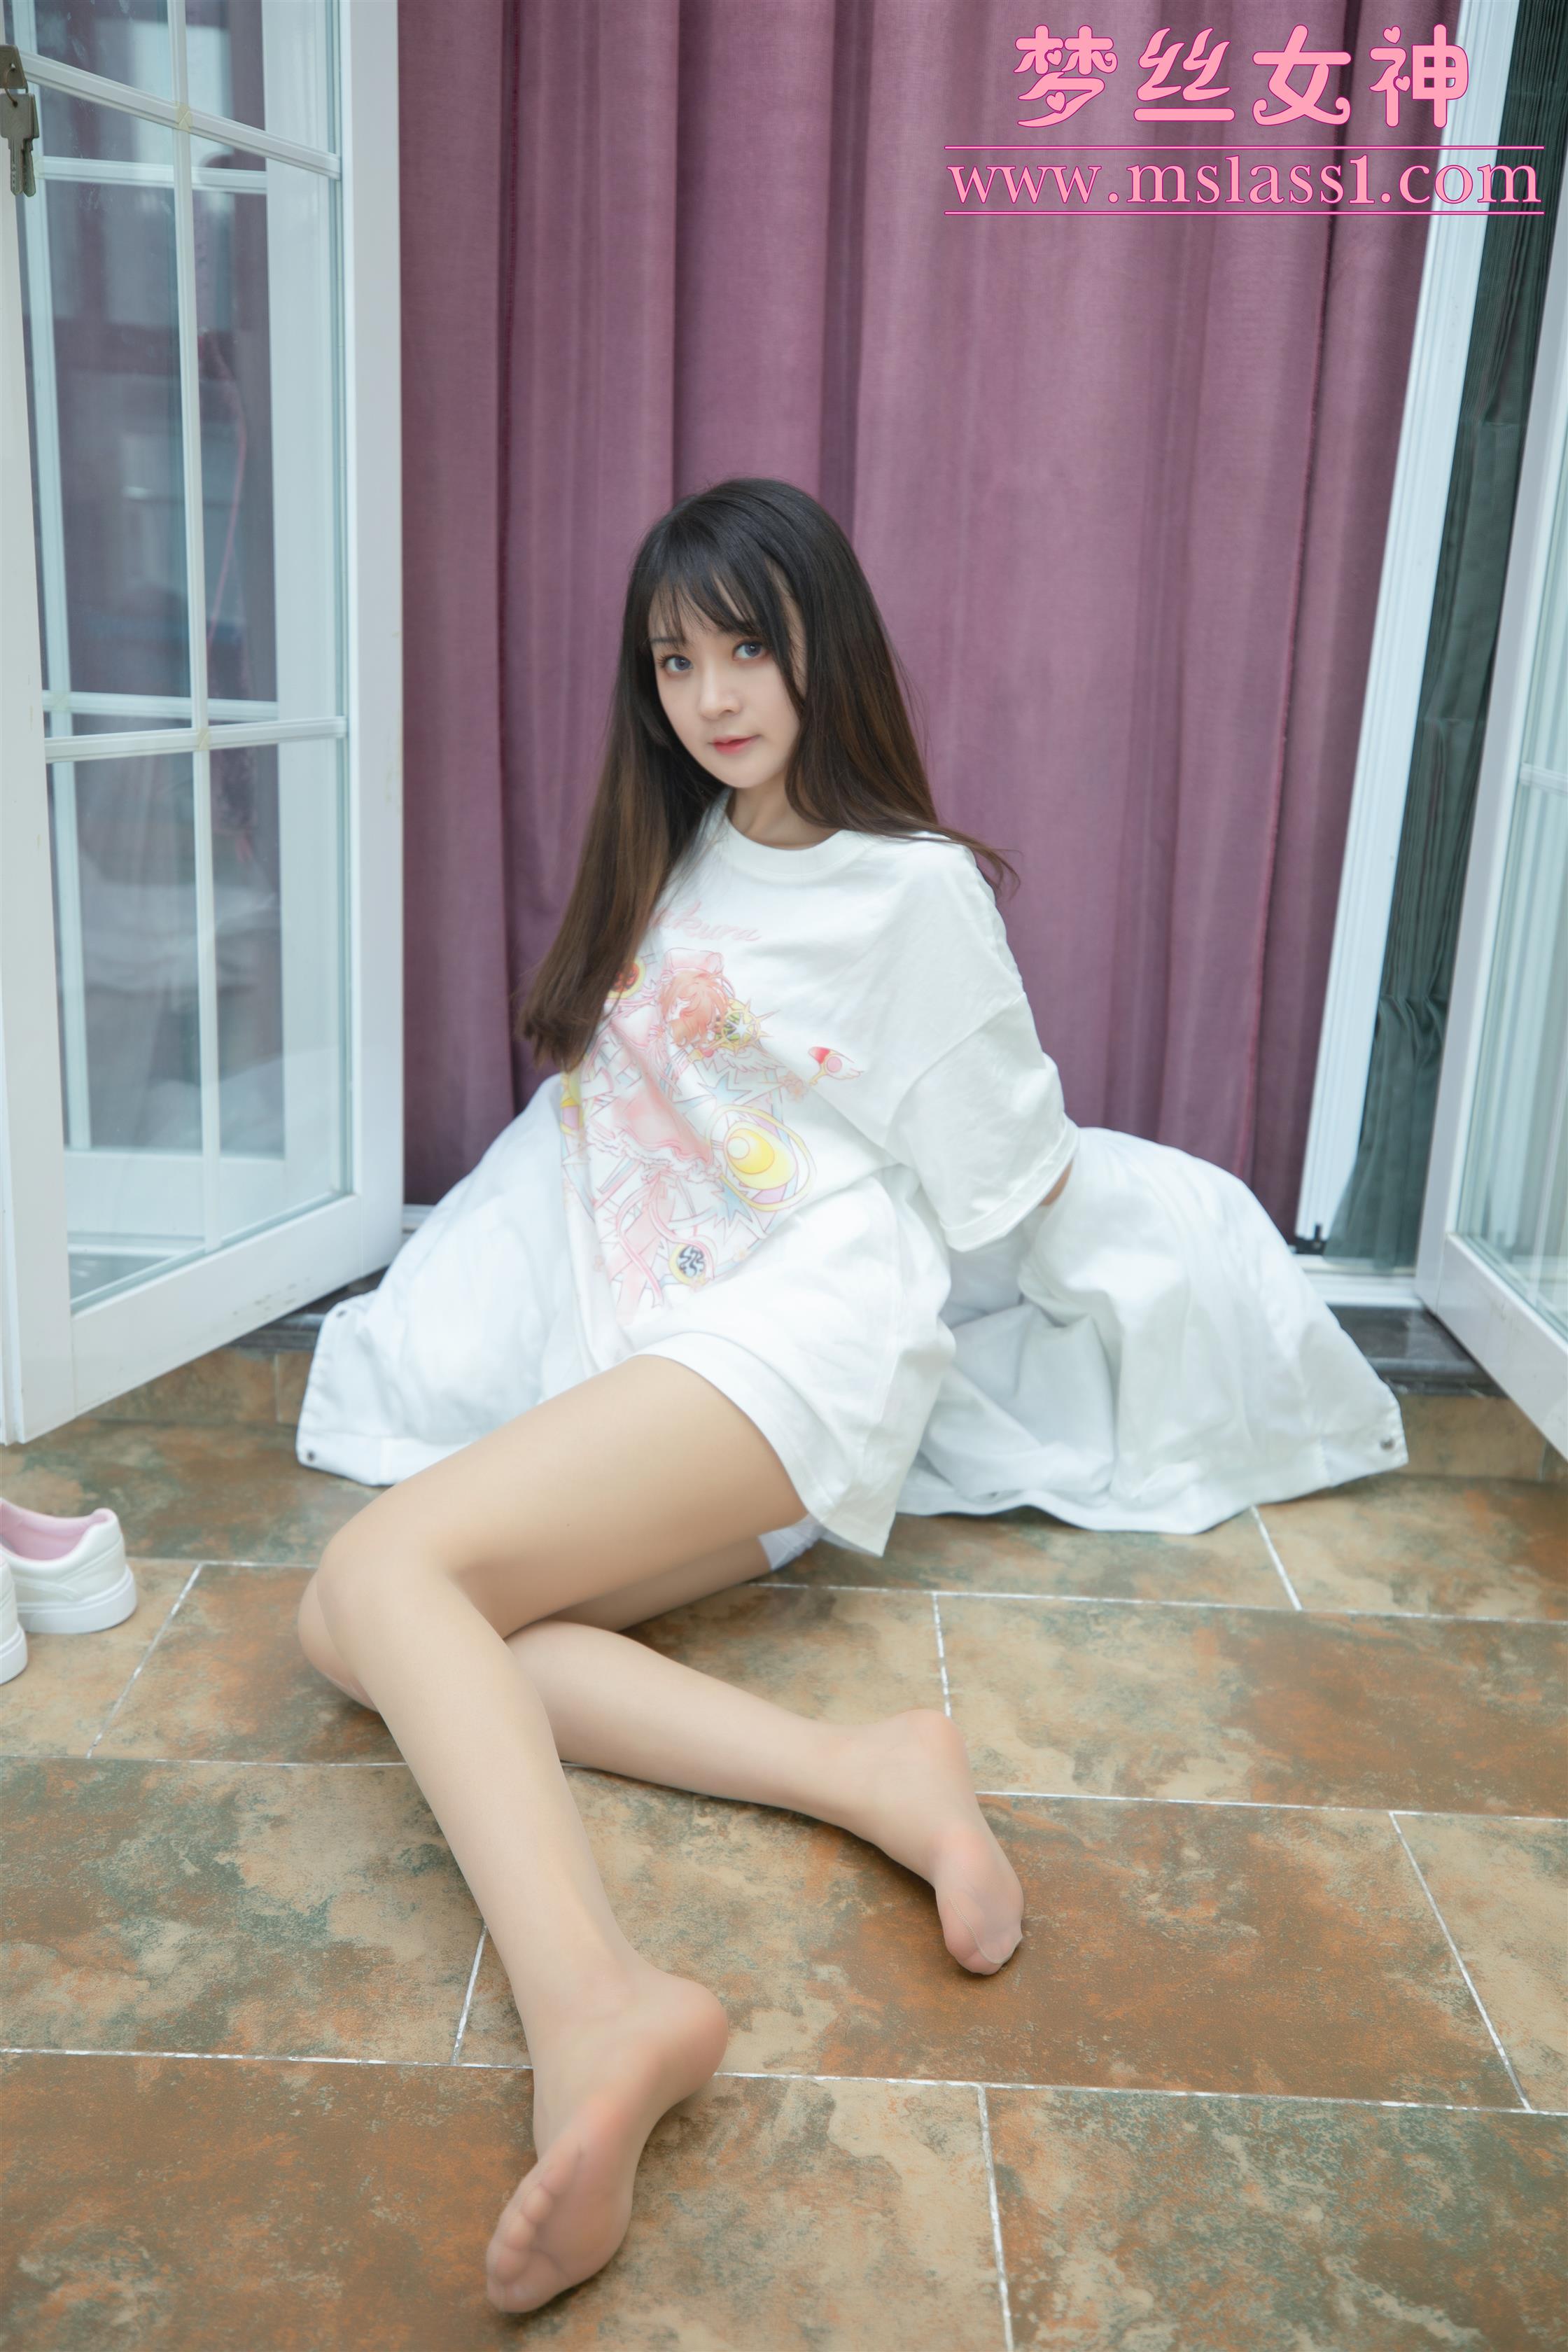 MSLASS梦丝女神 郭襄 Model Guo Xiang - 49.jpg